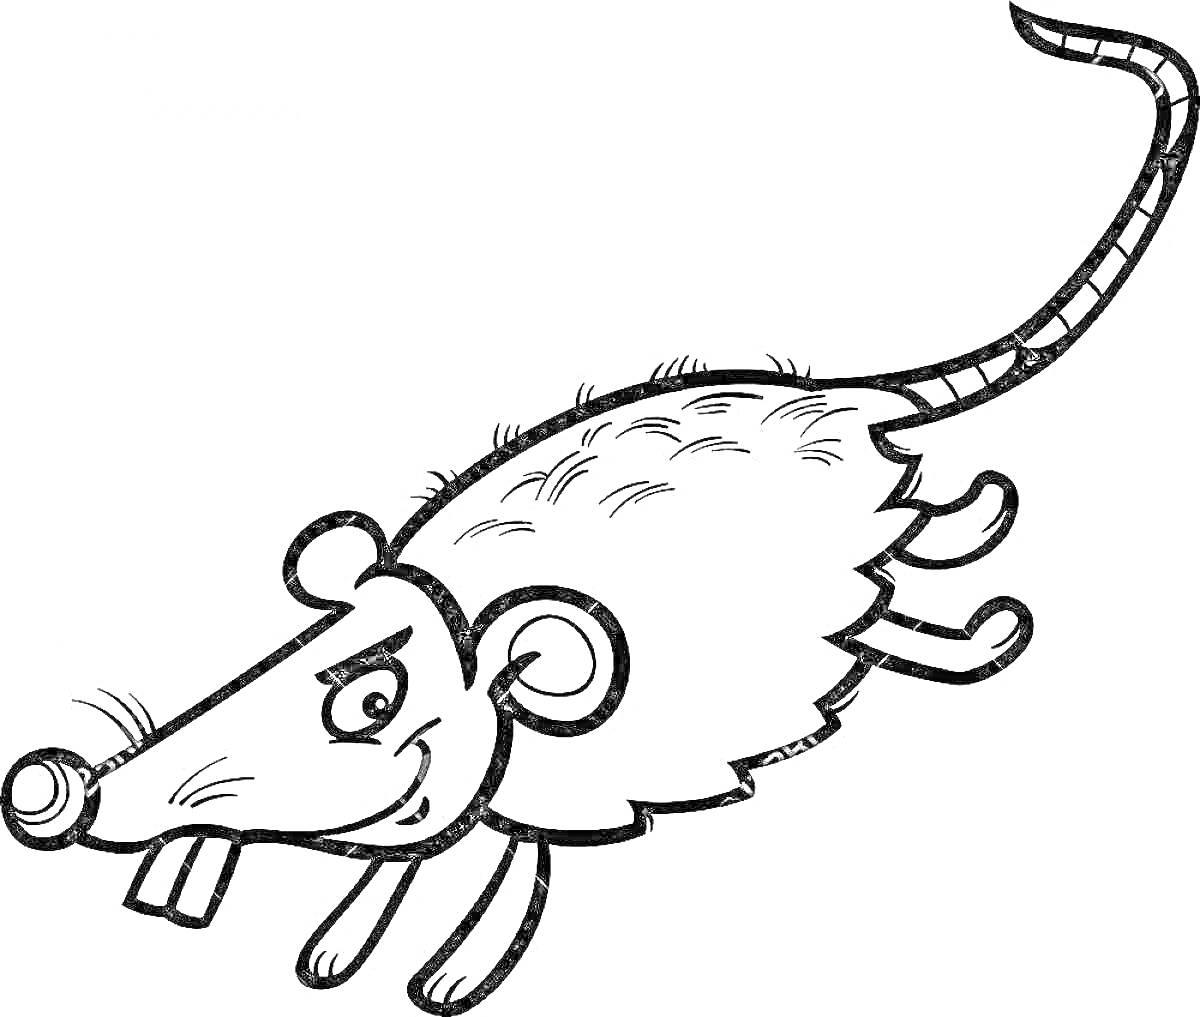 Раскраска Крыска Лариска с длинным хвостом и большими ушами, улыбающаяся, прорисованные лапки